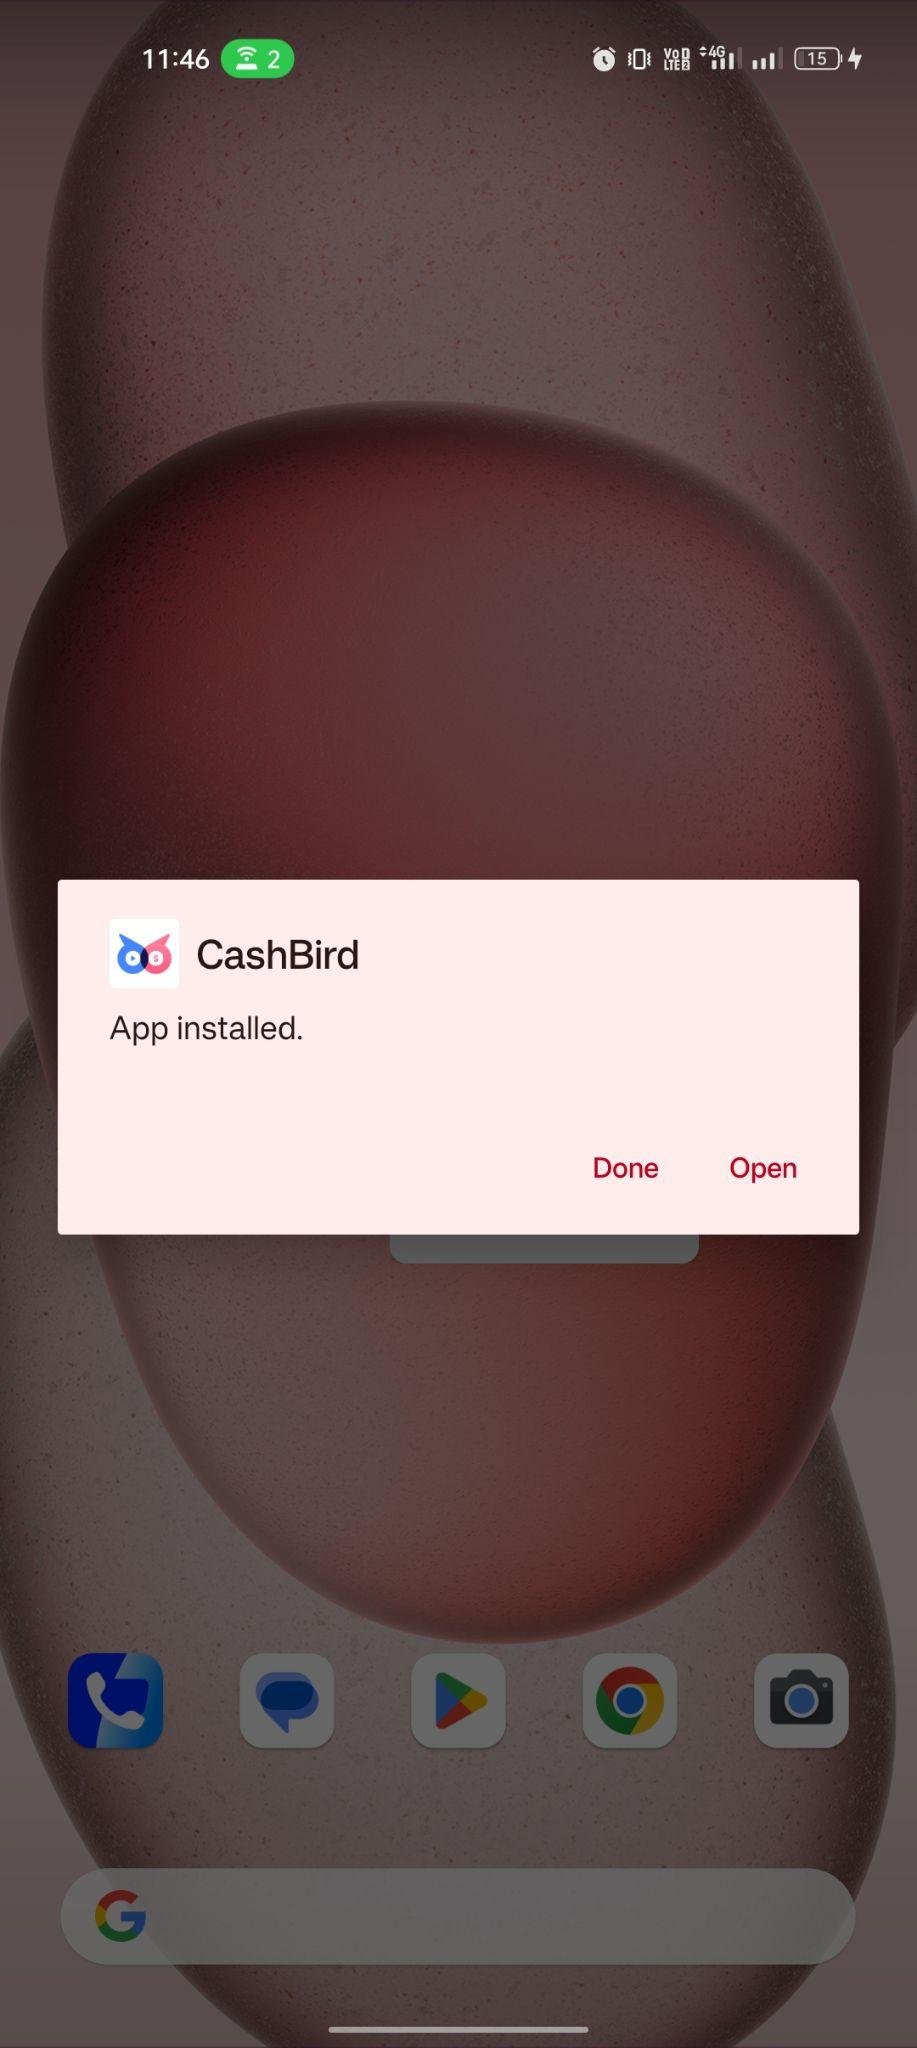 CashBird apk installed